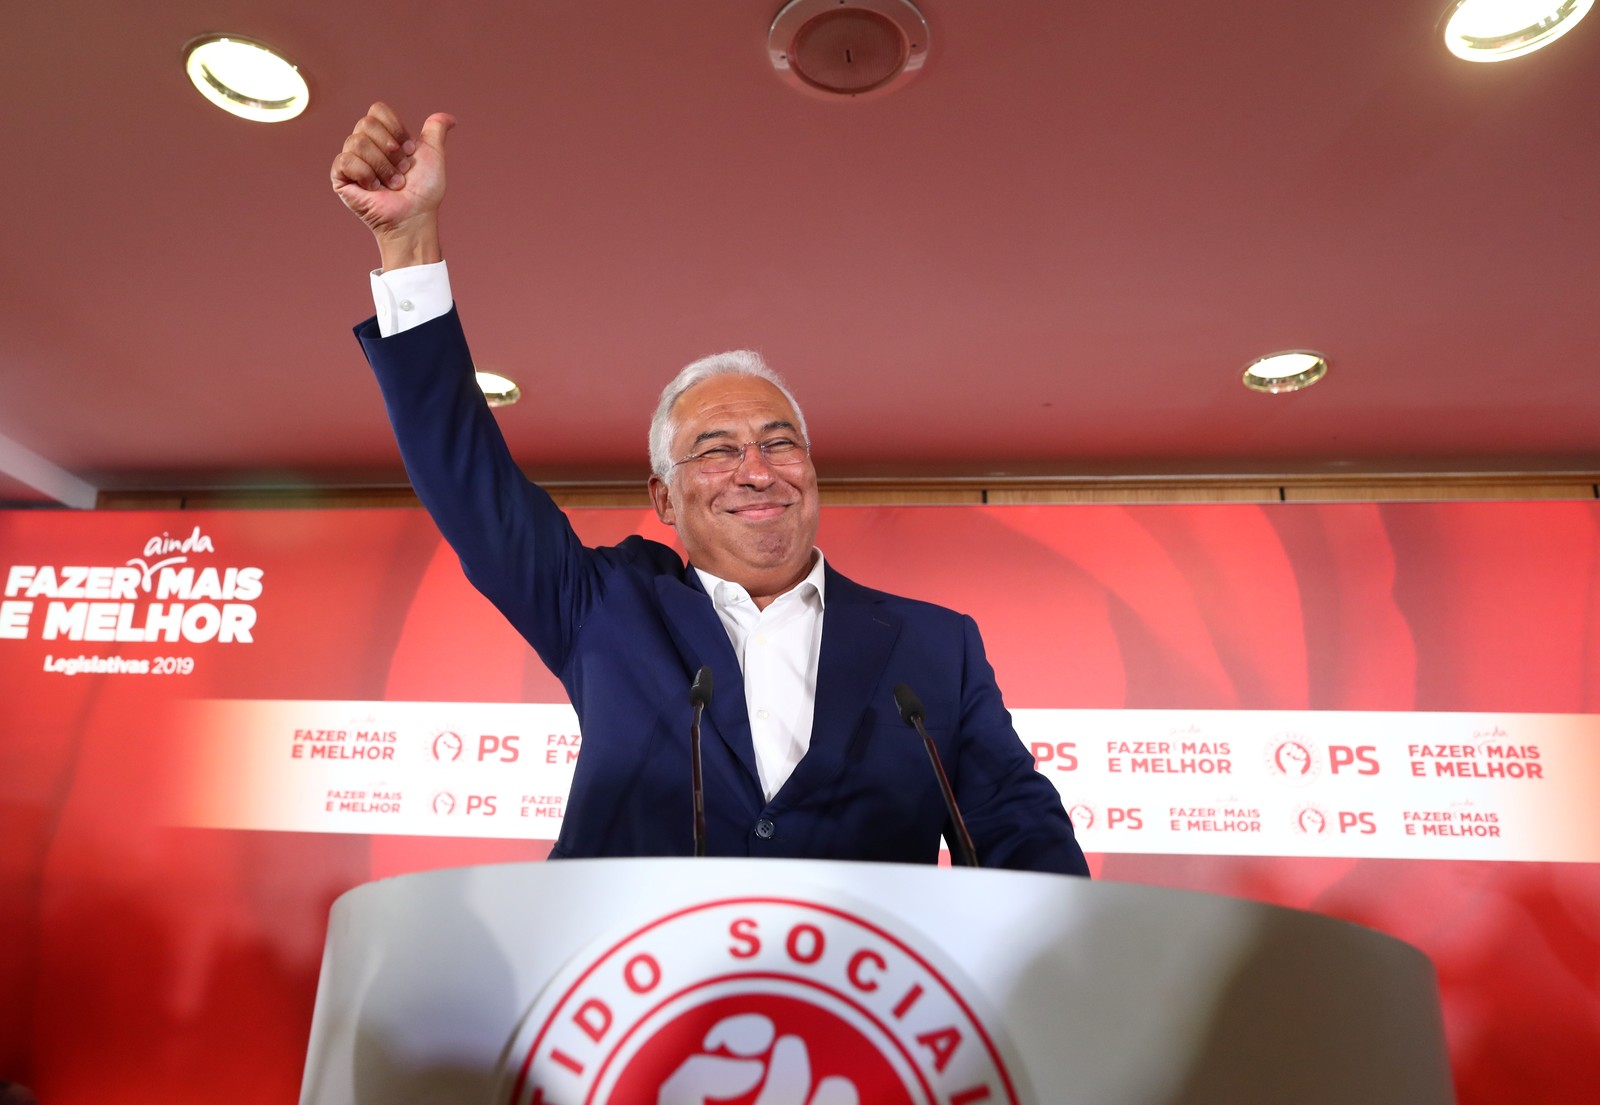 Partido Socialista vence eleição legislativa em Portugal